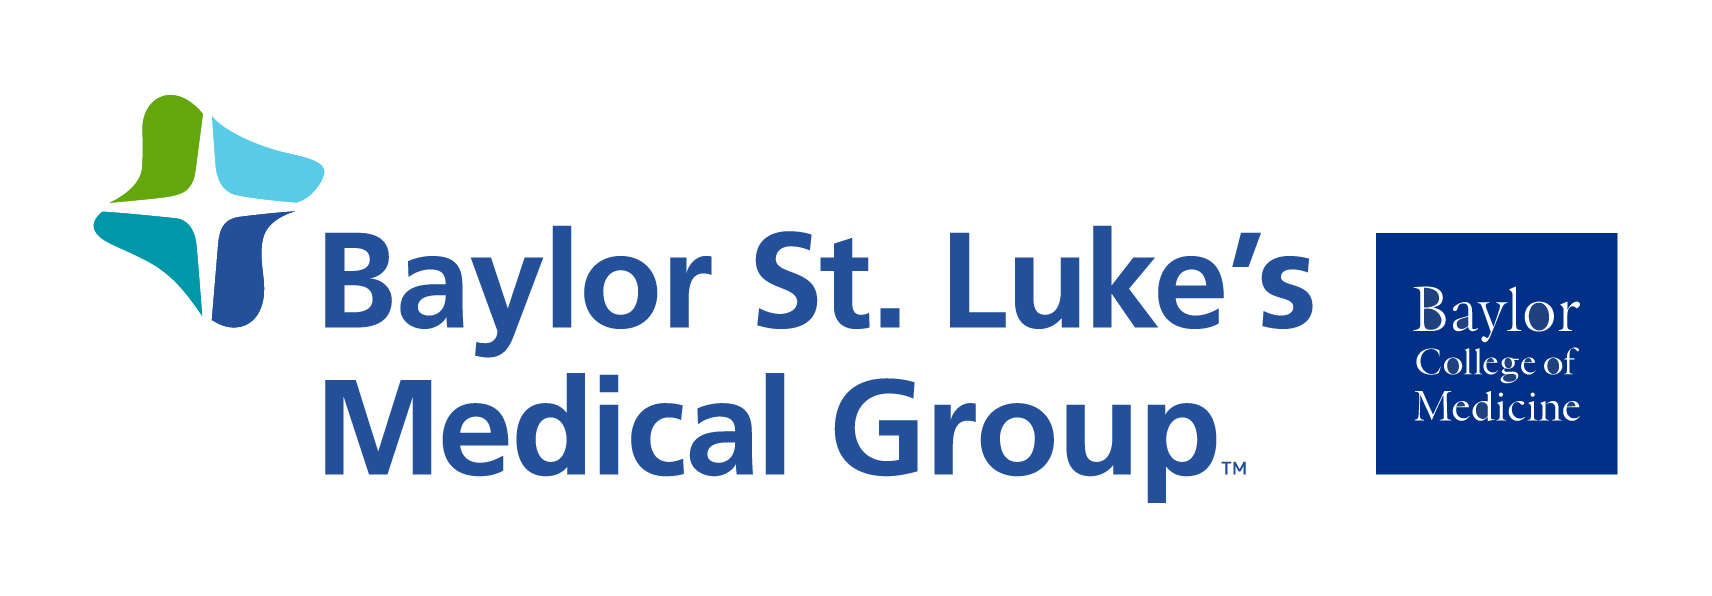 Baylor St. Lukes Medical Group